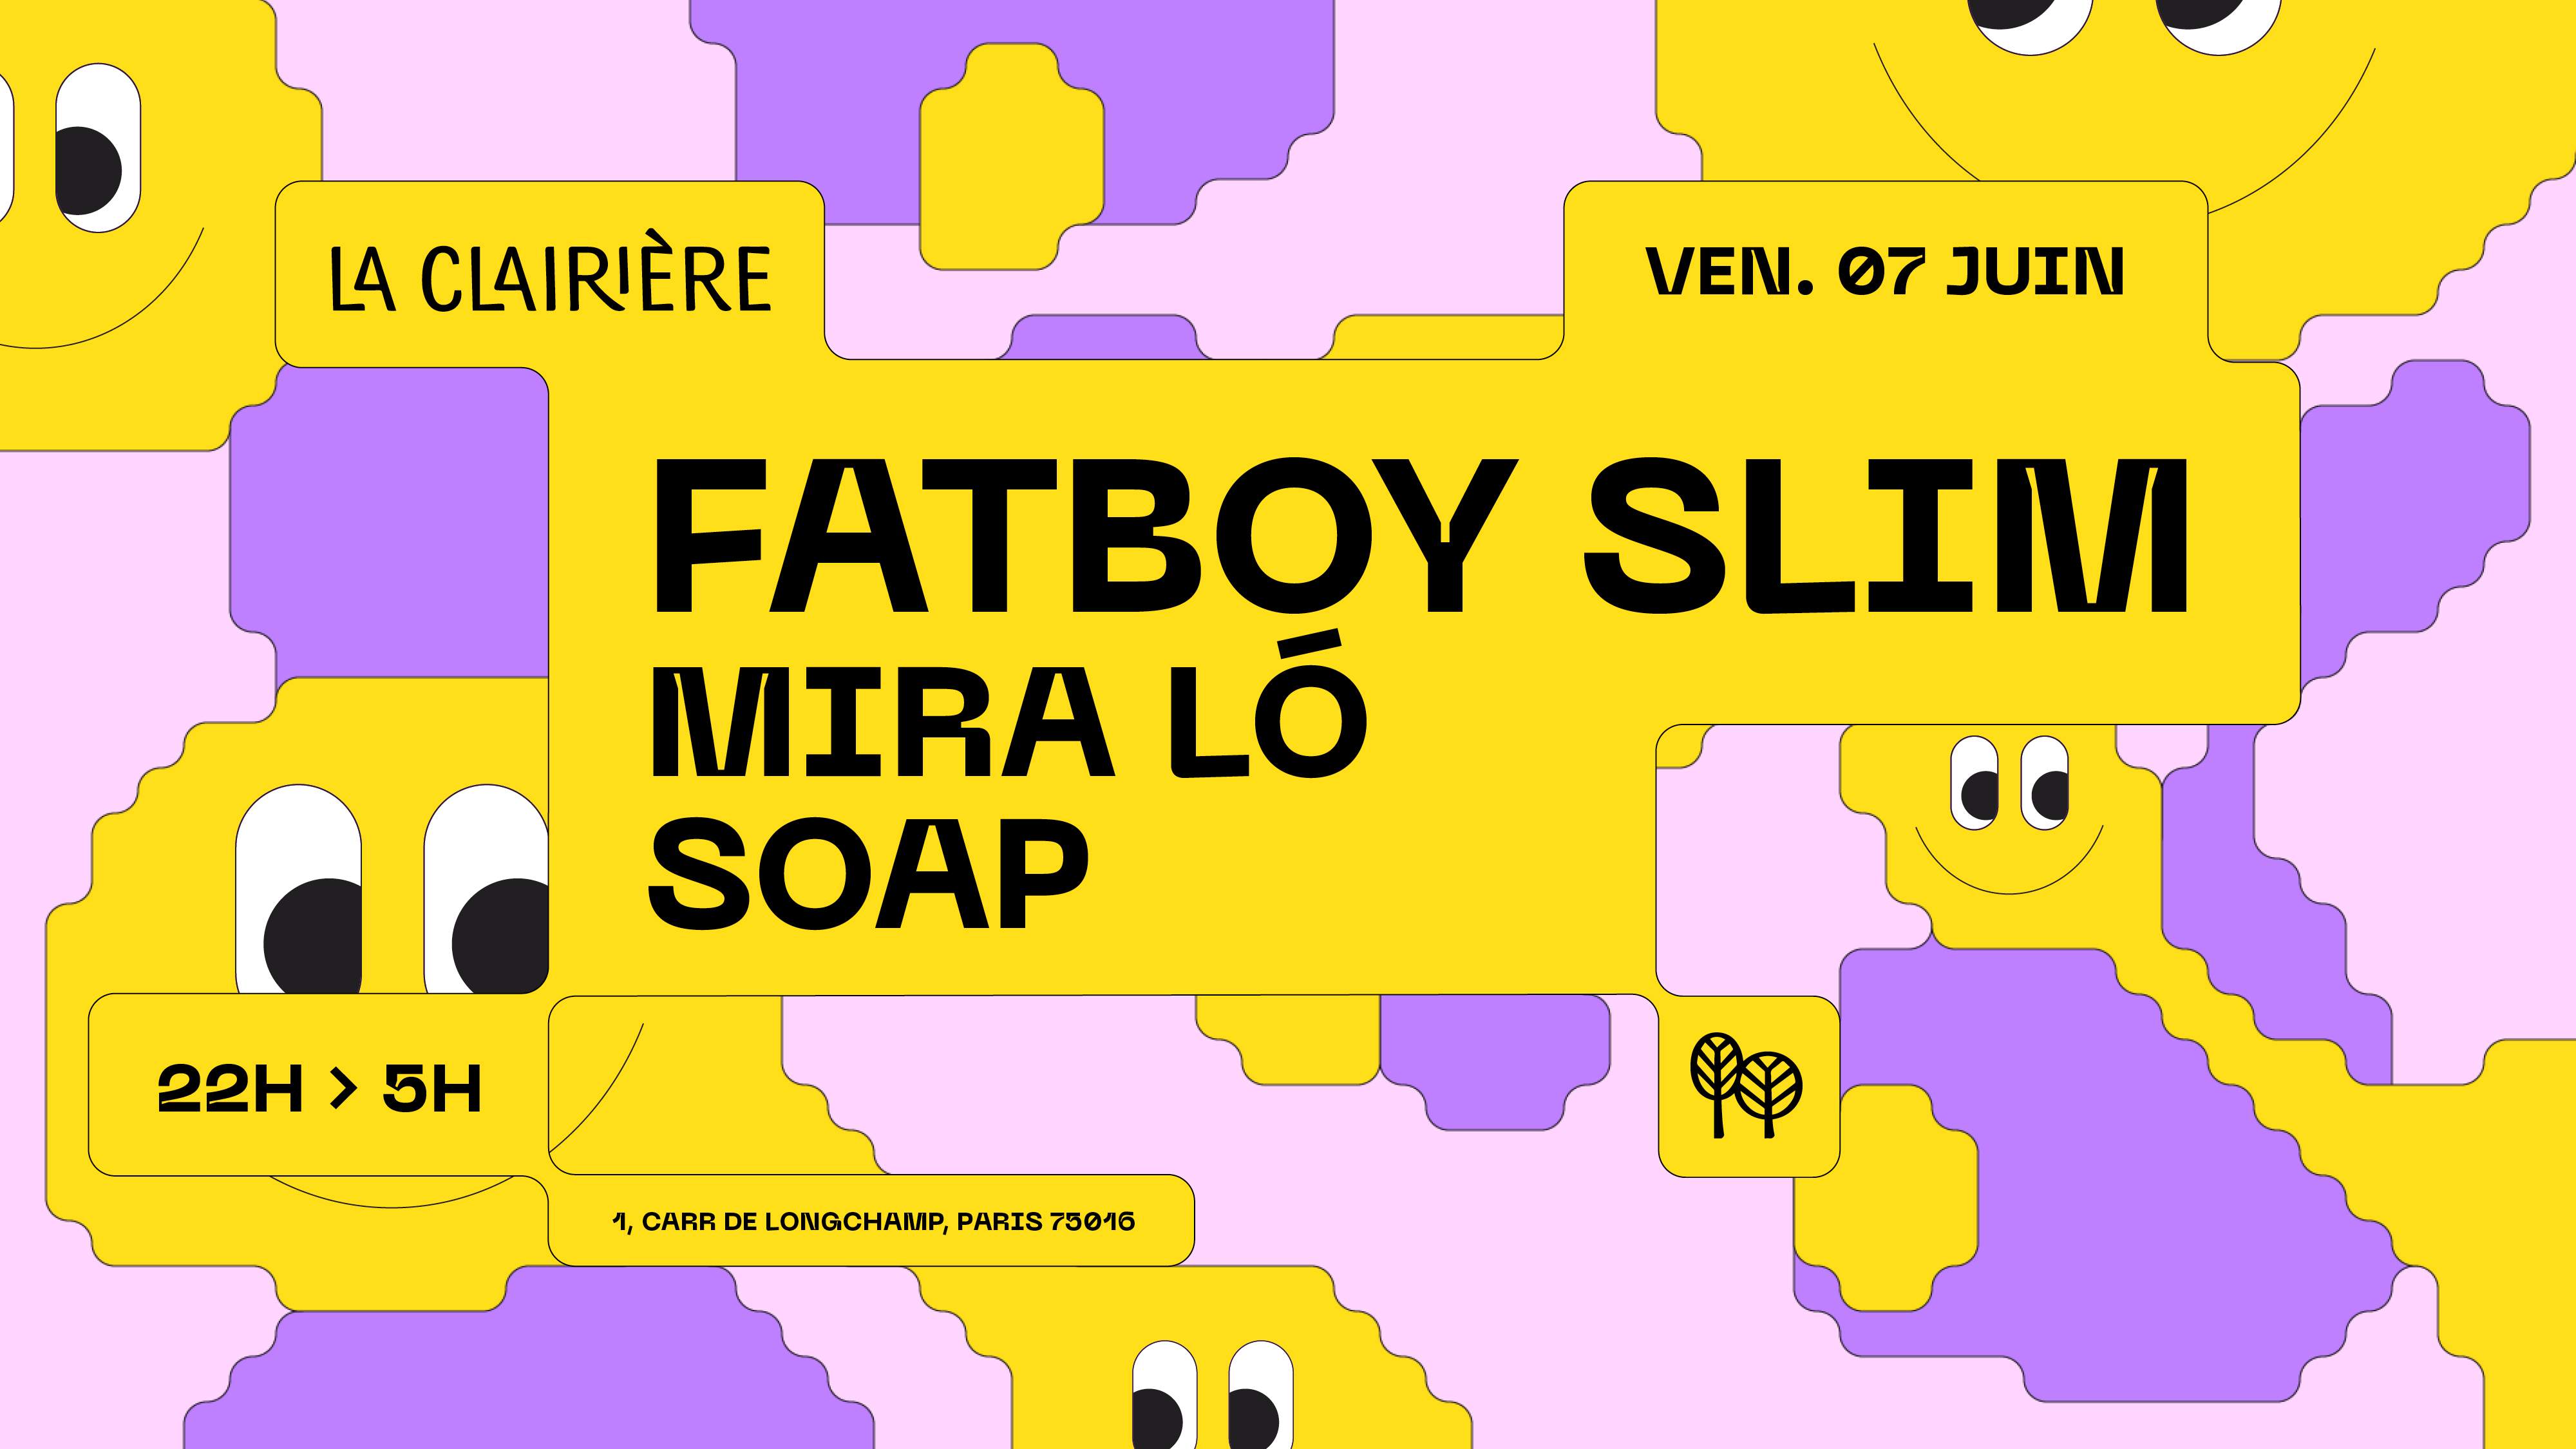 La Clairière: Fatboy Slim - フライヤー表